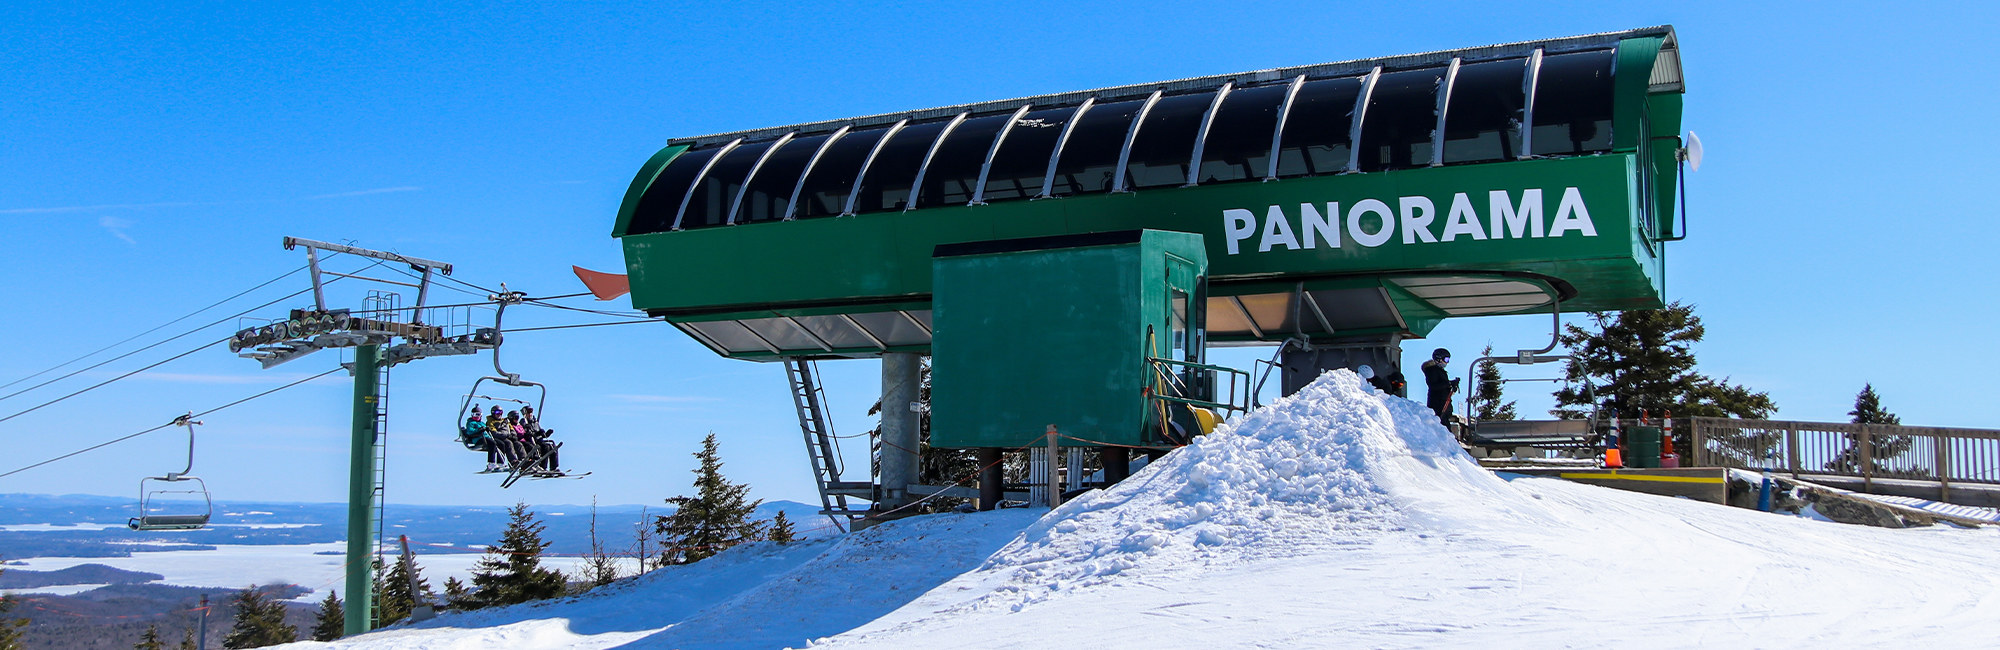 Pan lift at the summit